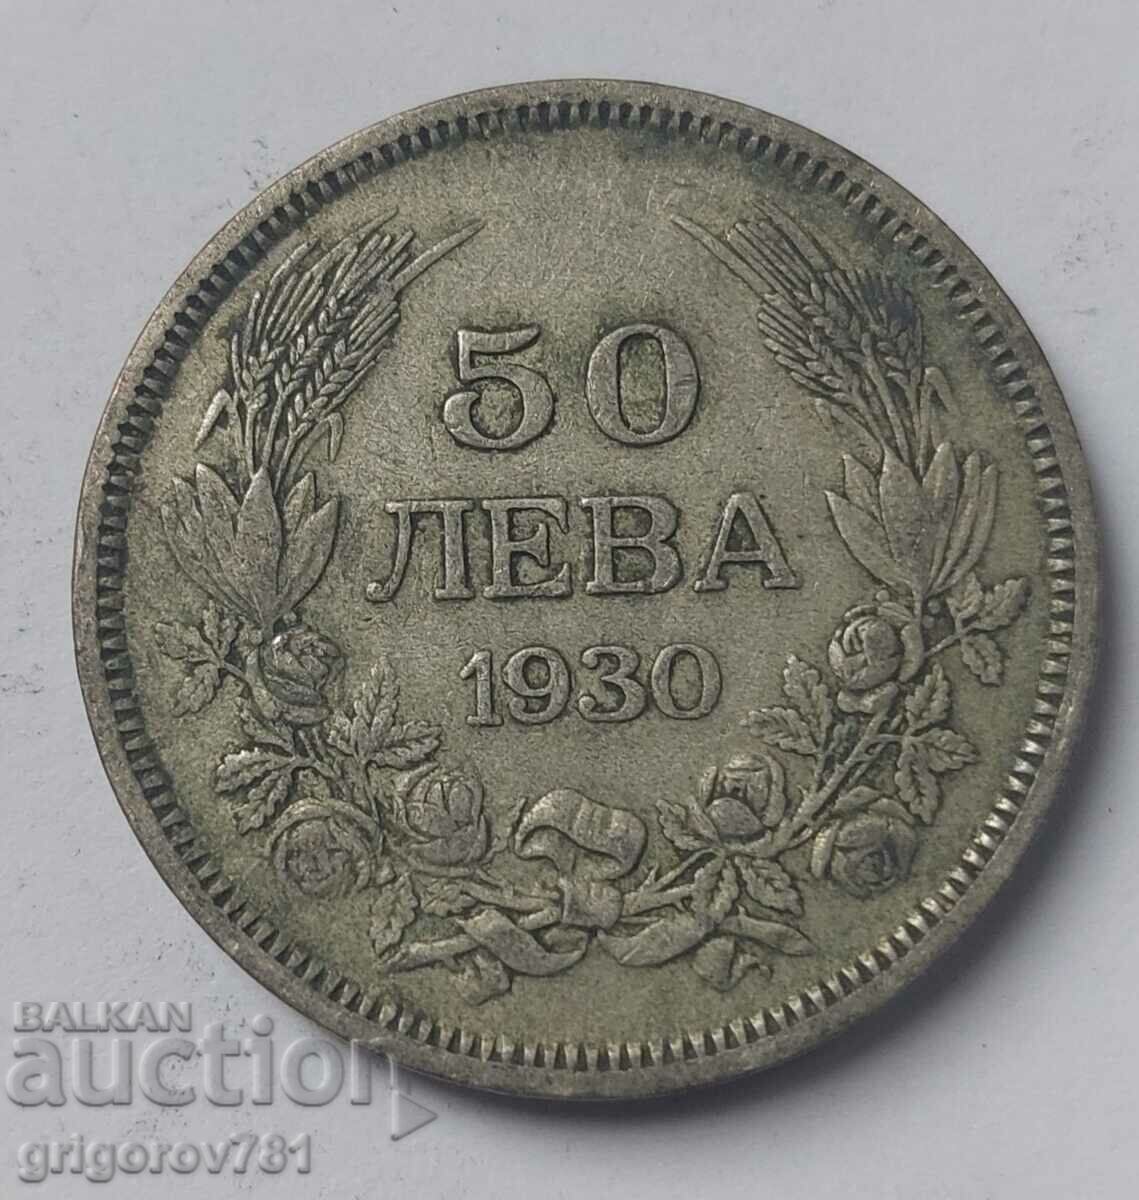 Ασήμι 50 λέβα Βουλγαρία 1930 - ασημένιο νόμισμα #38